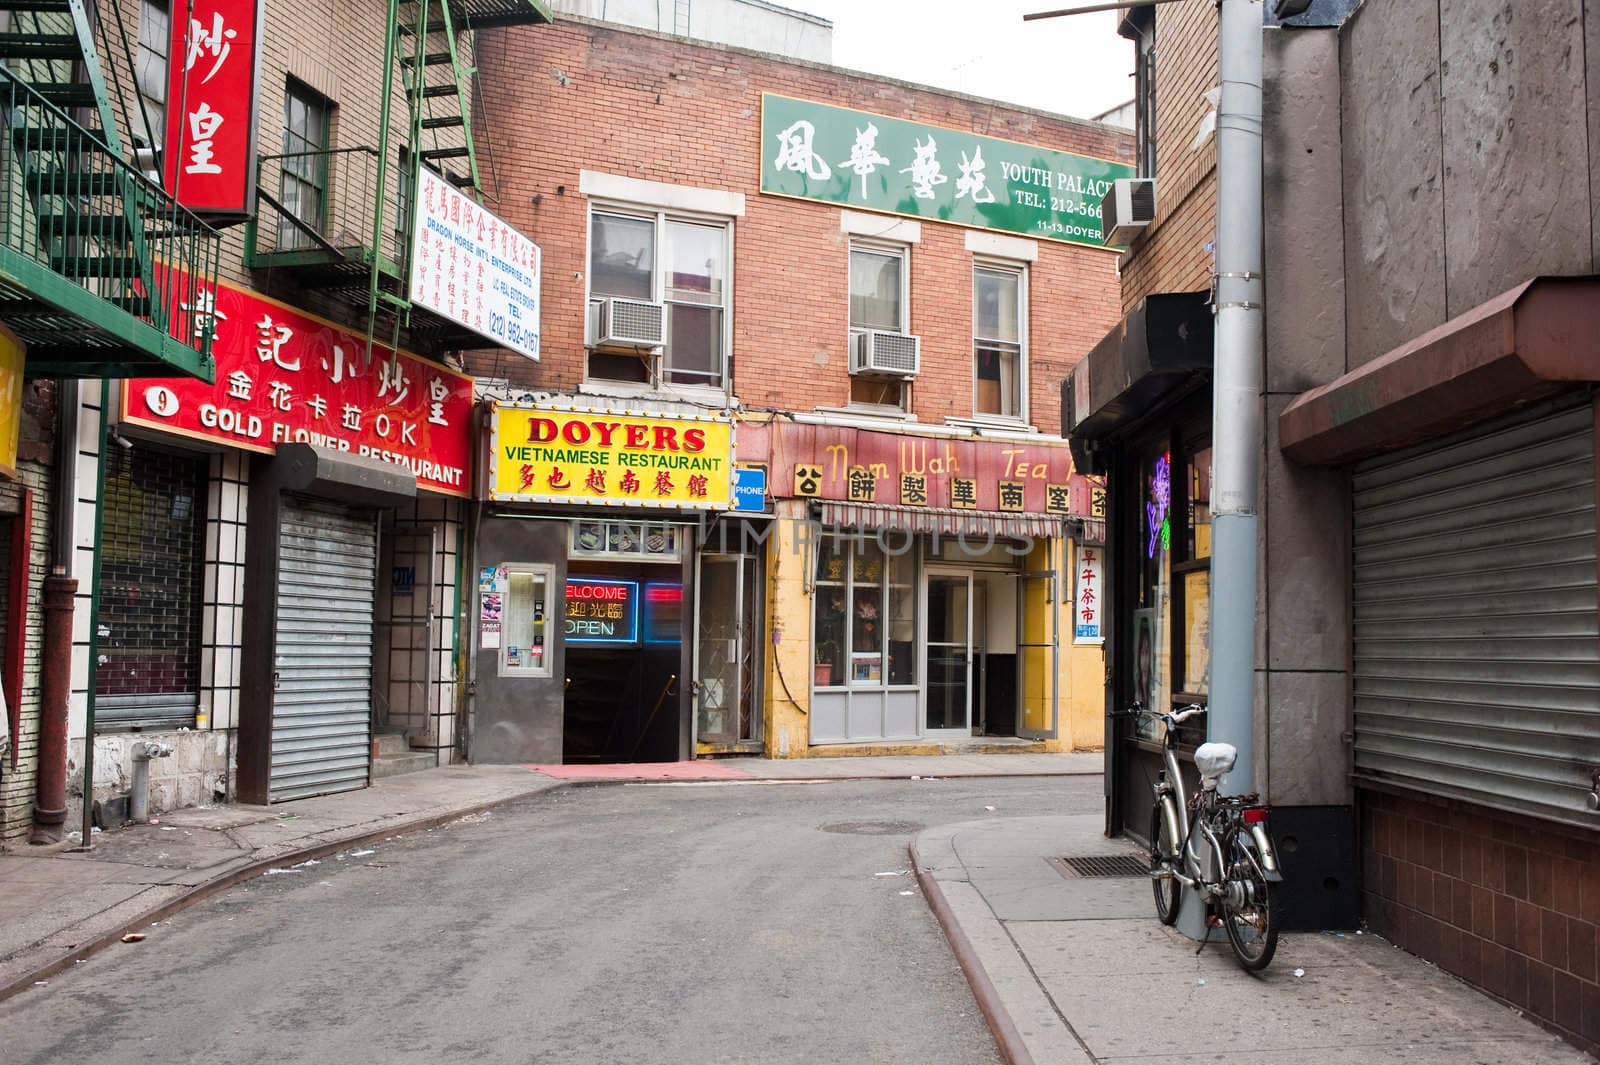 Notorous 19th century gang street, (the hachet men), Chinatown, New York